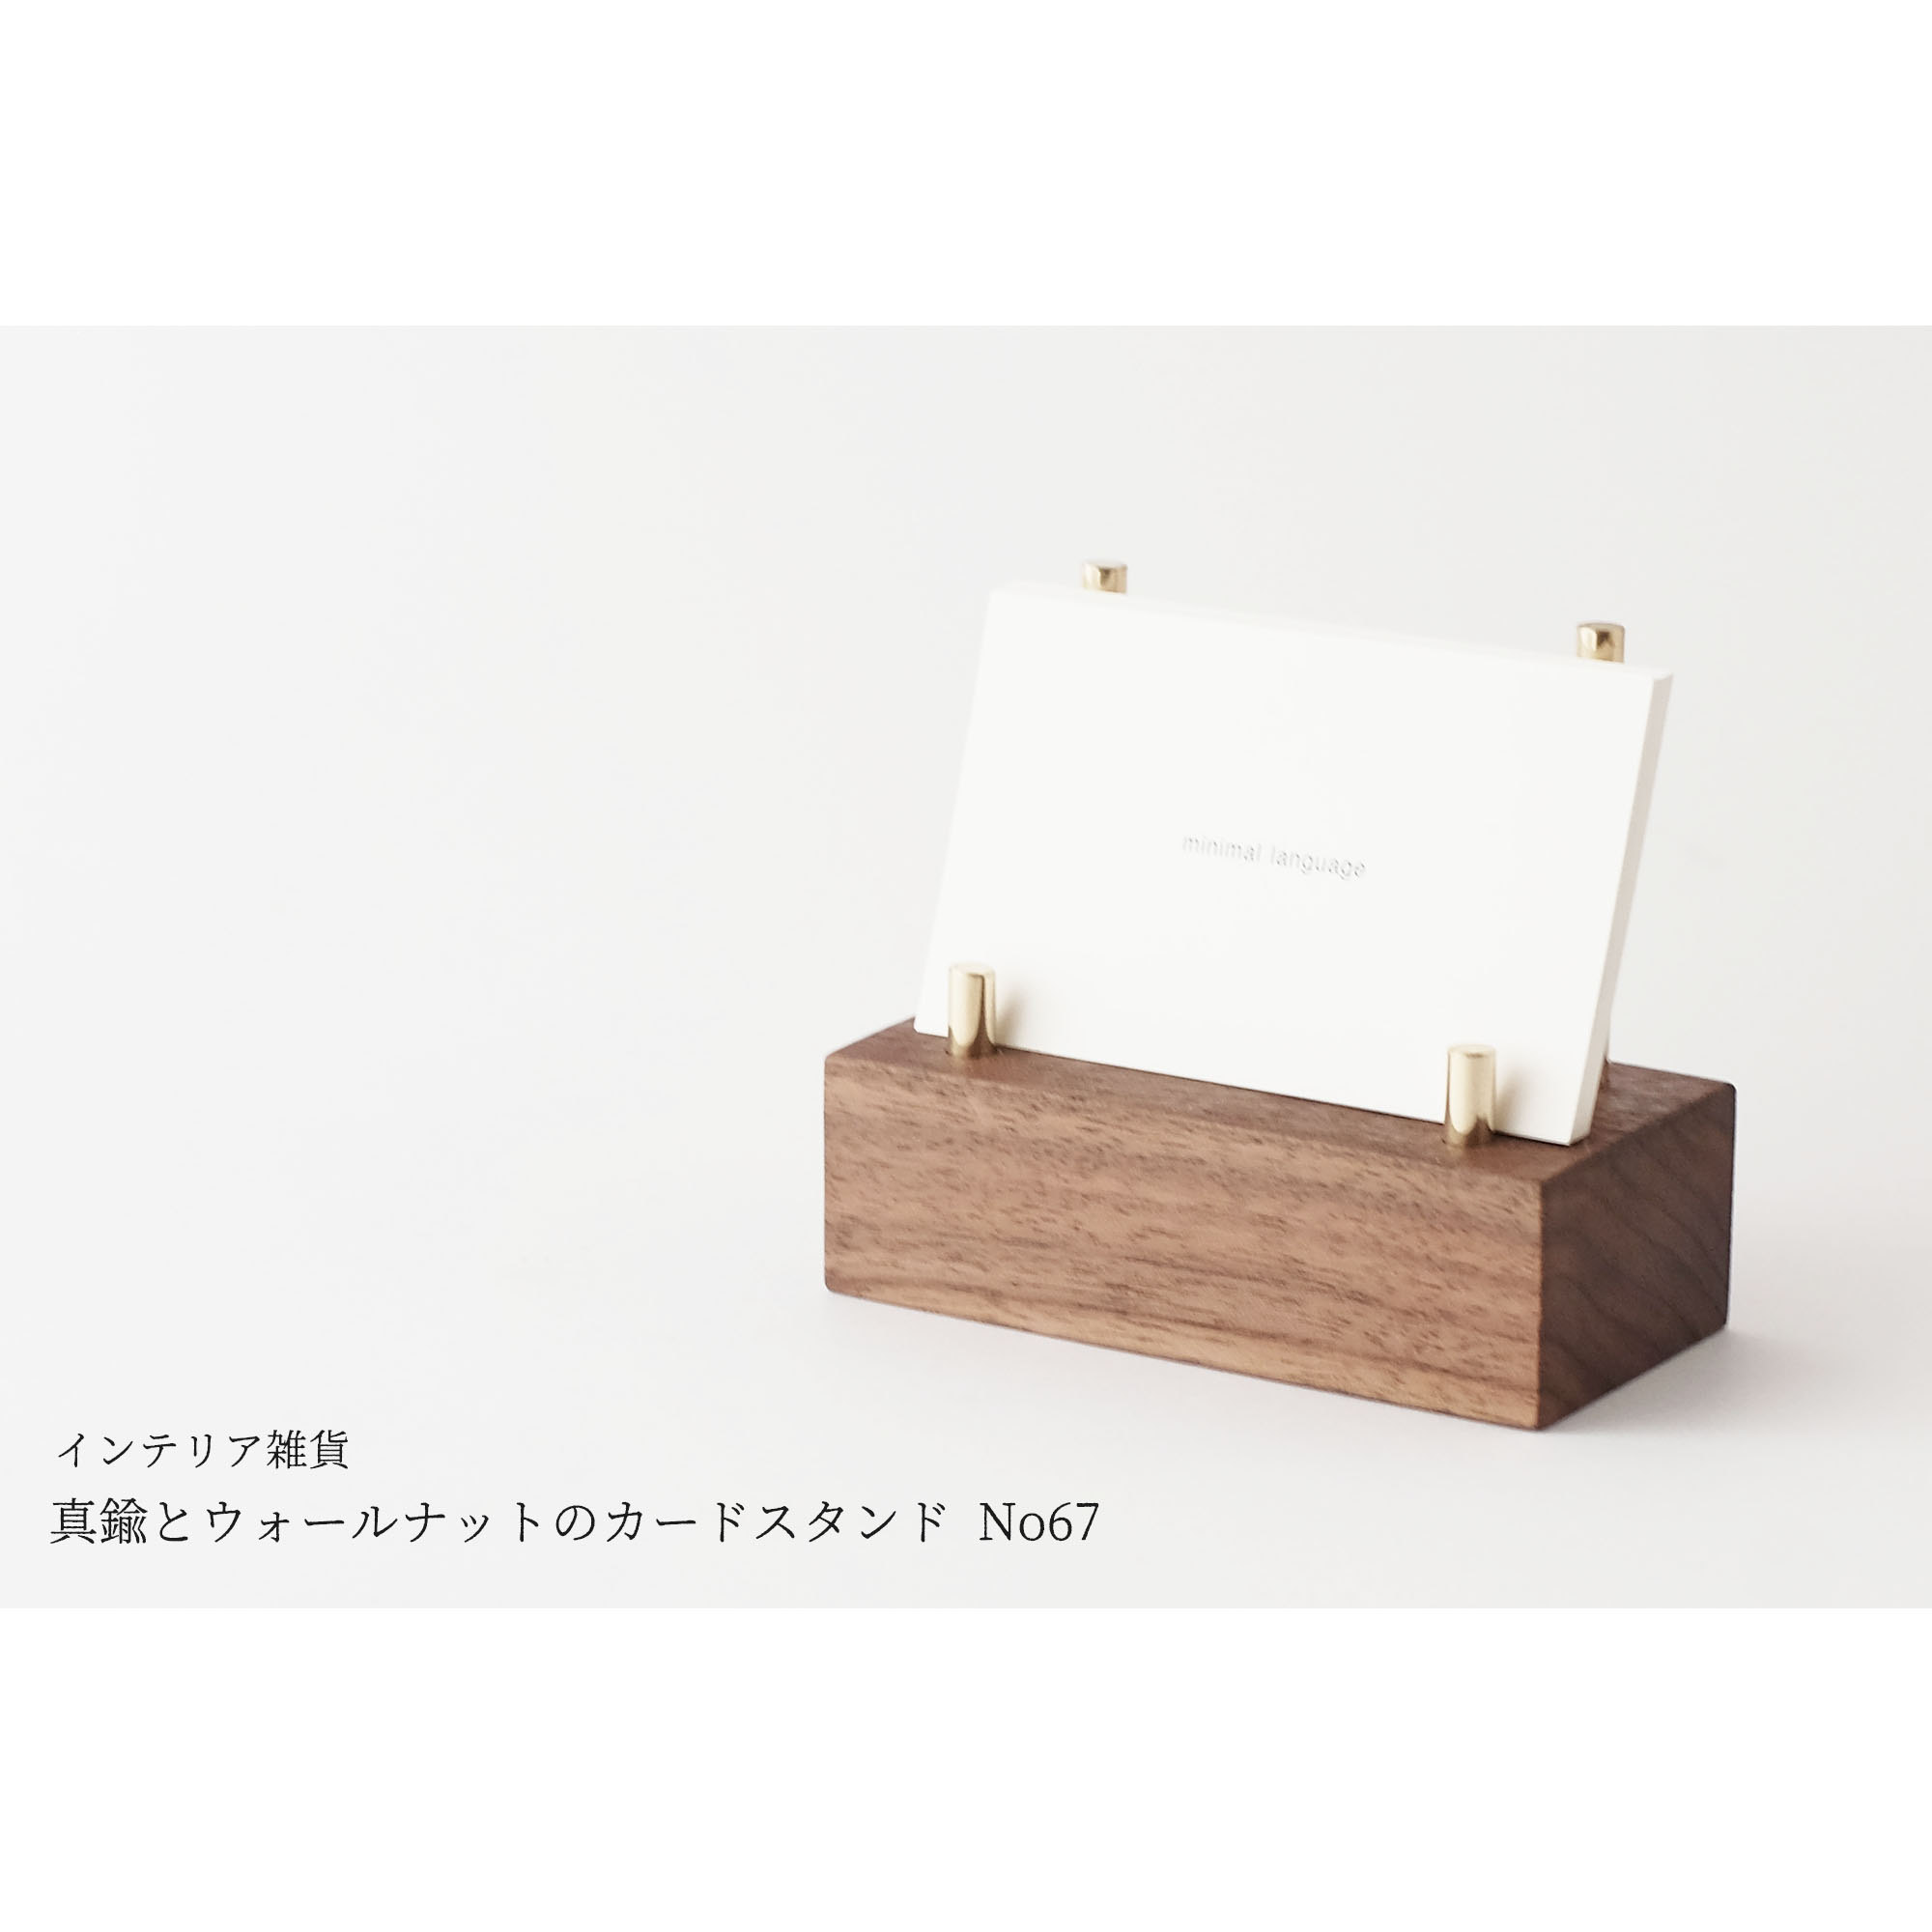 真鍮とウォールナットのカードスタンド No67 Iichi ハンドメイド クラフト作品 手仕事品の通販